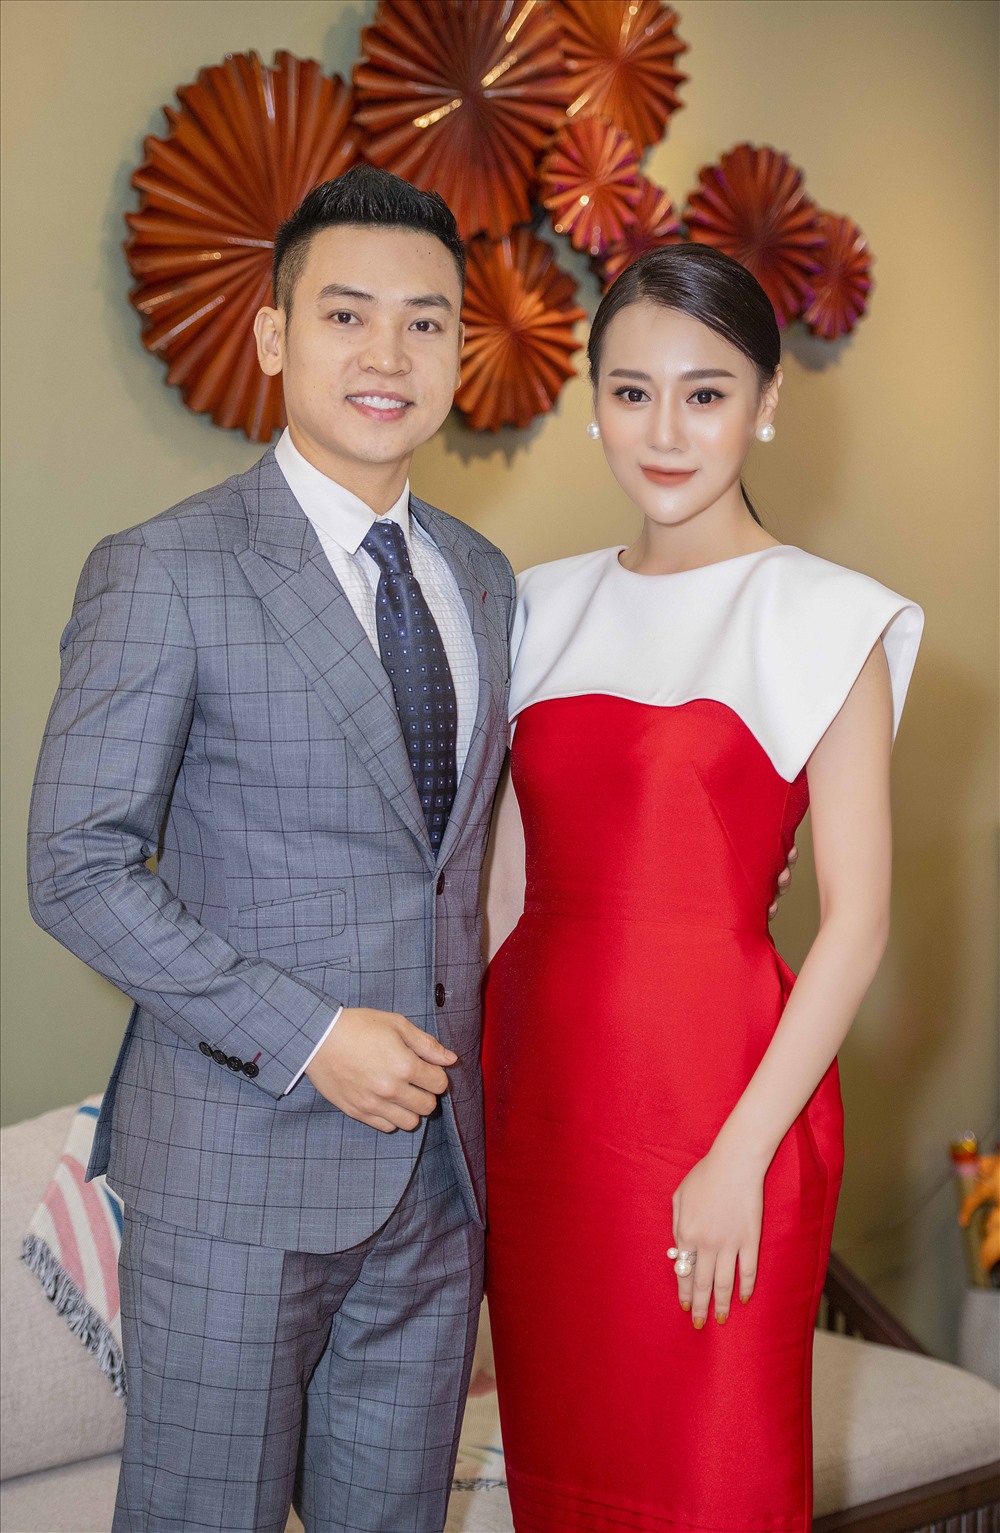 Lần đầu gặp gỡ Phương Oanh, ca sĩ Duy Khoa hào hứng trò chuyện đồng thời bày tỏ ấn tượng với vai diễn của người đẹp trong phim “Quỳnh búp bê“.